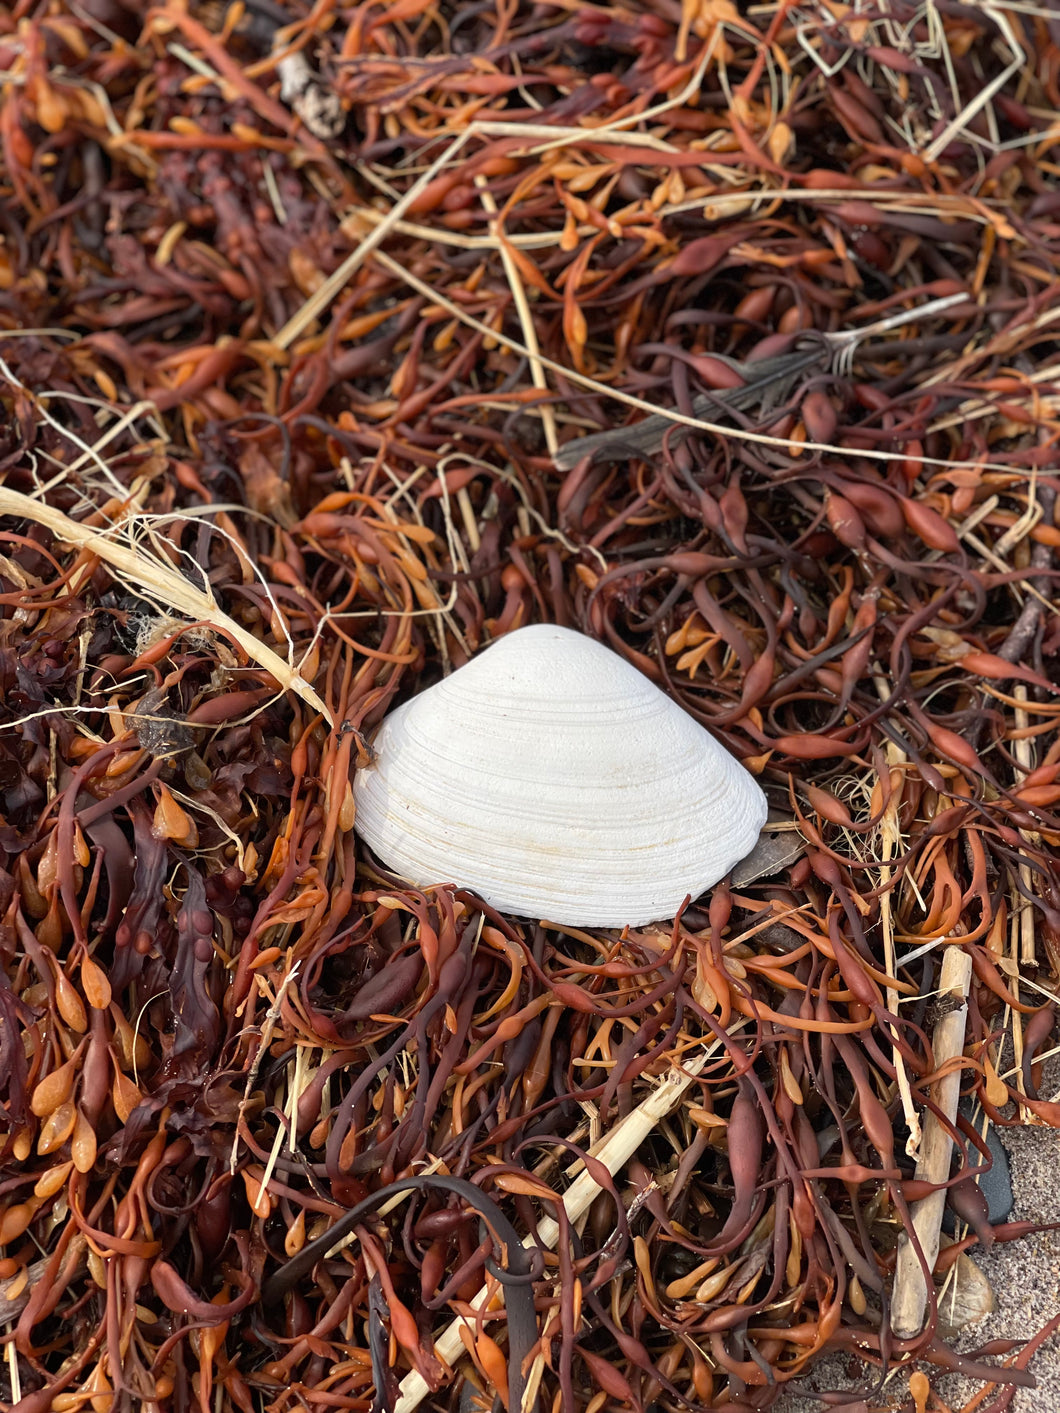 Atlantic Surf Clam Shells from Maine – WashAshore Store